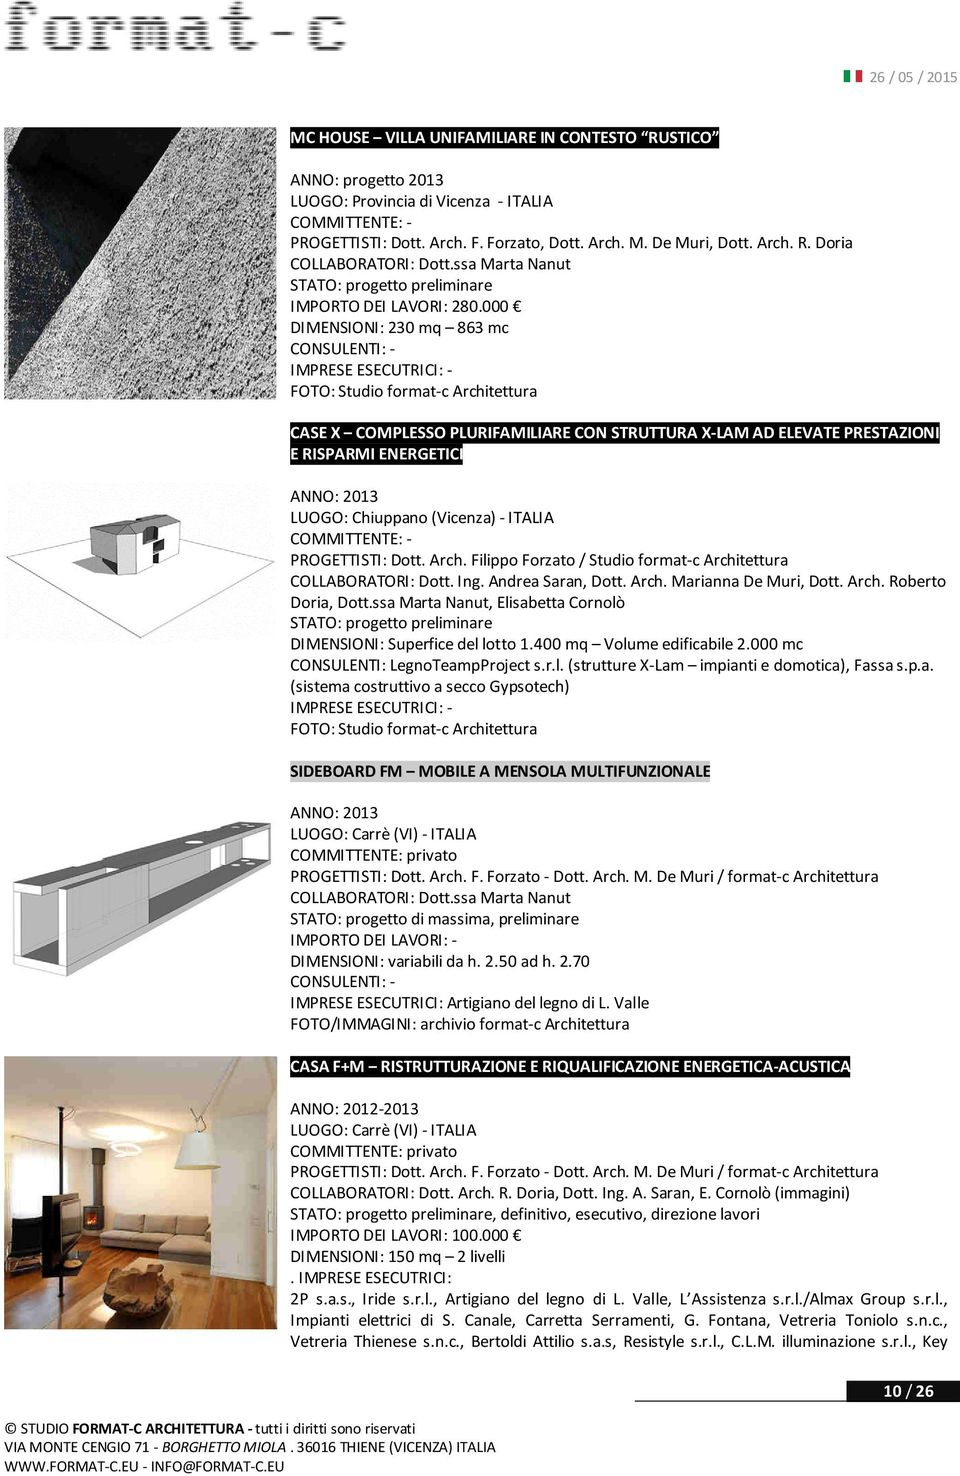 000 DIMENSIONI: 230 mq 863 mc FOTO: Studio format-c Architettura CASE X COMPLESSO PLURIFAMILIARE CON STRUTTURA X-LAM AD ELEVATE PRESTAZIONI E RISPARMI ENERGETICI ANNO: 2013 LUOGO: Chiuppano (Vicenza)